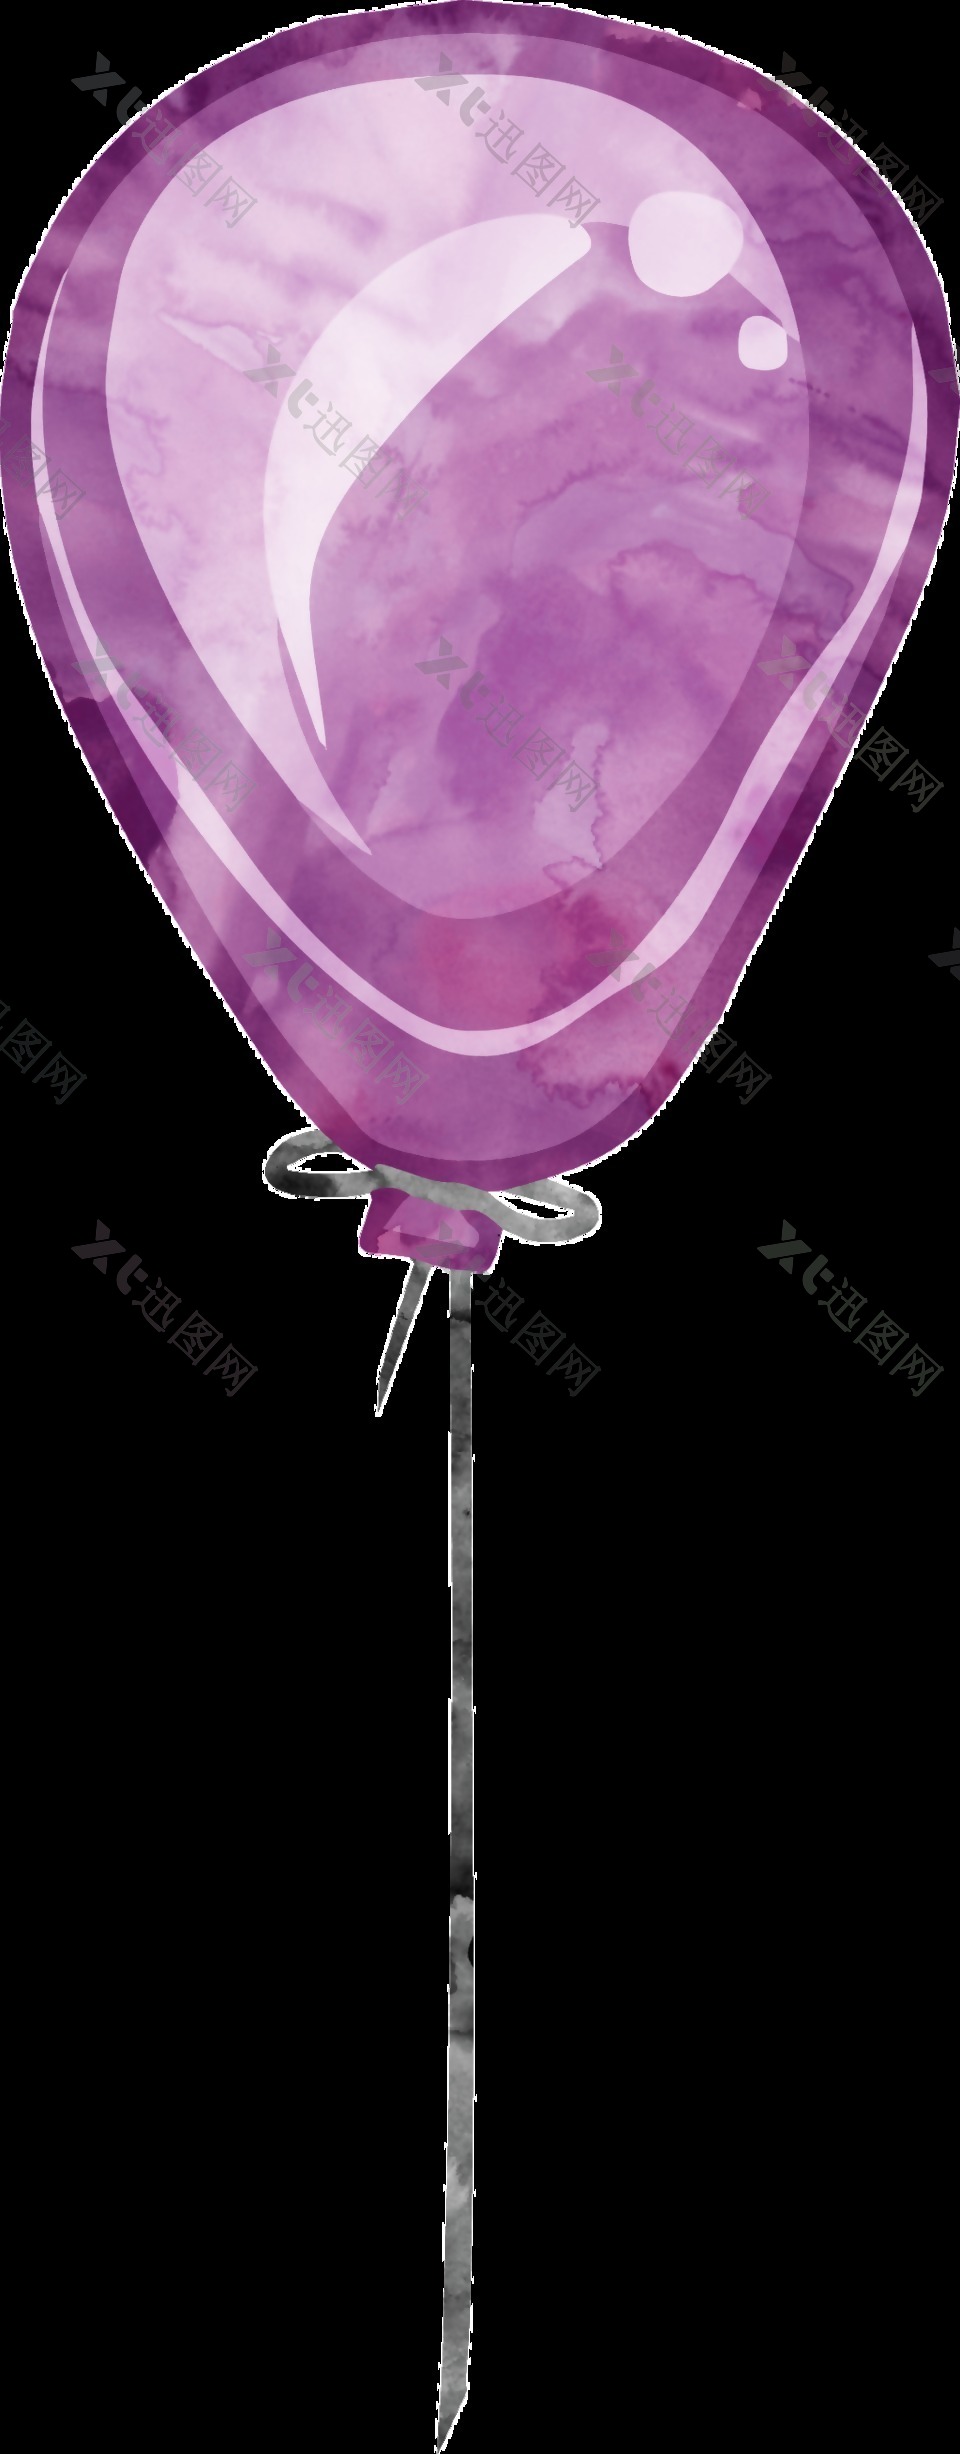 紫色气球卡通透明素材